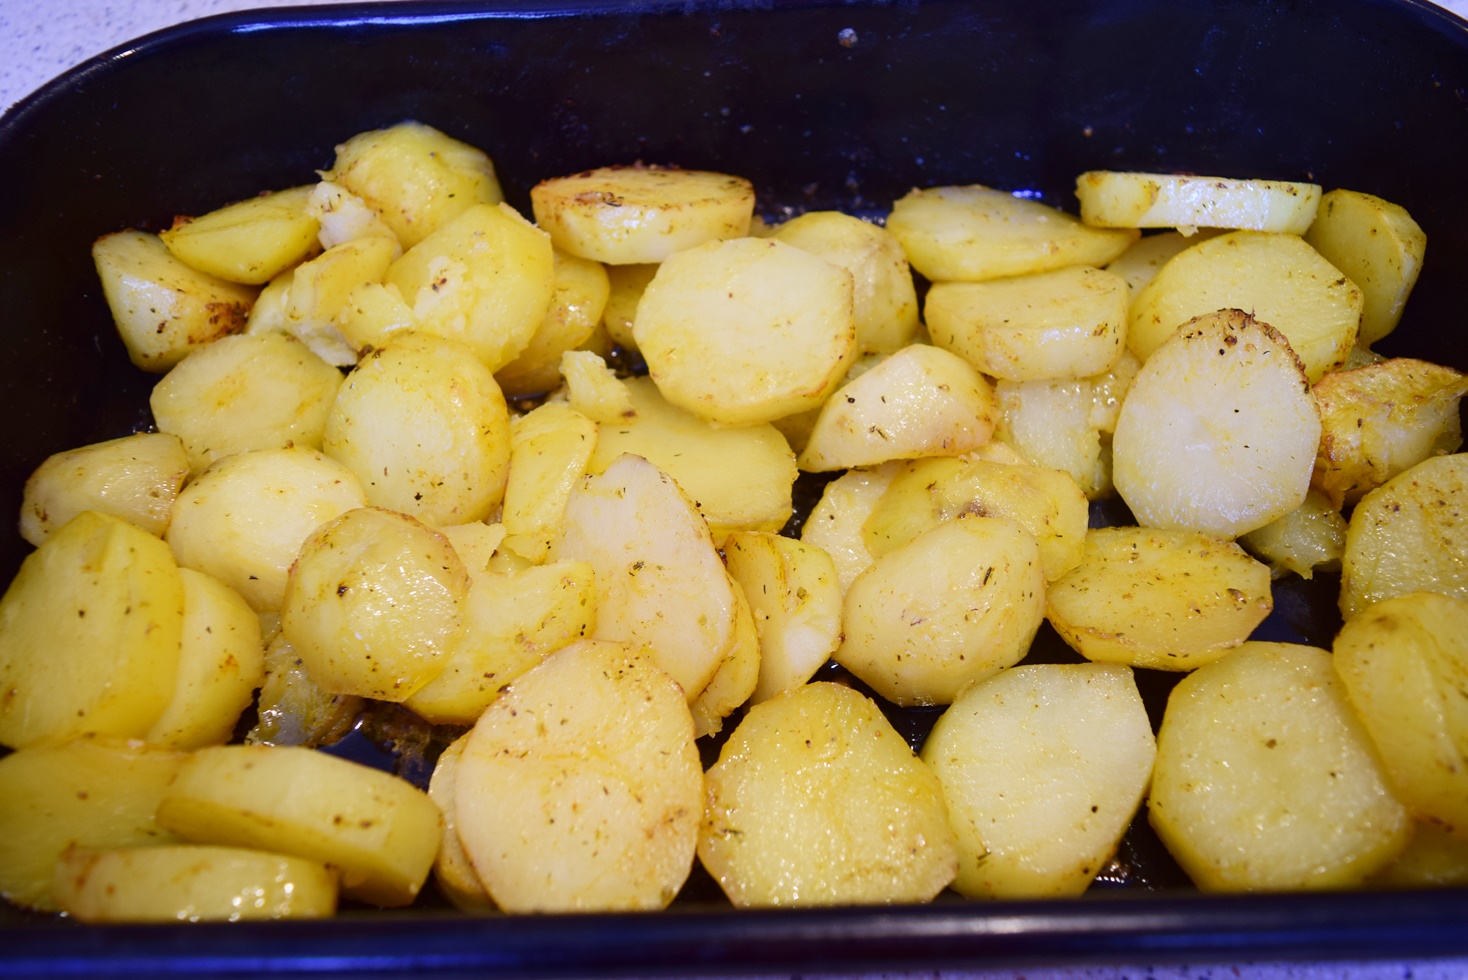 Reteta delicioasa de cartofi la cuptor gratinati cu cascaval